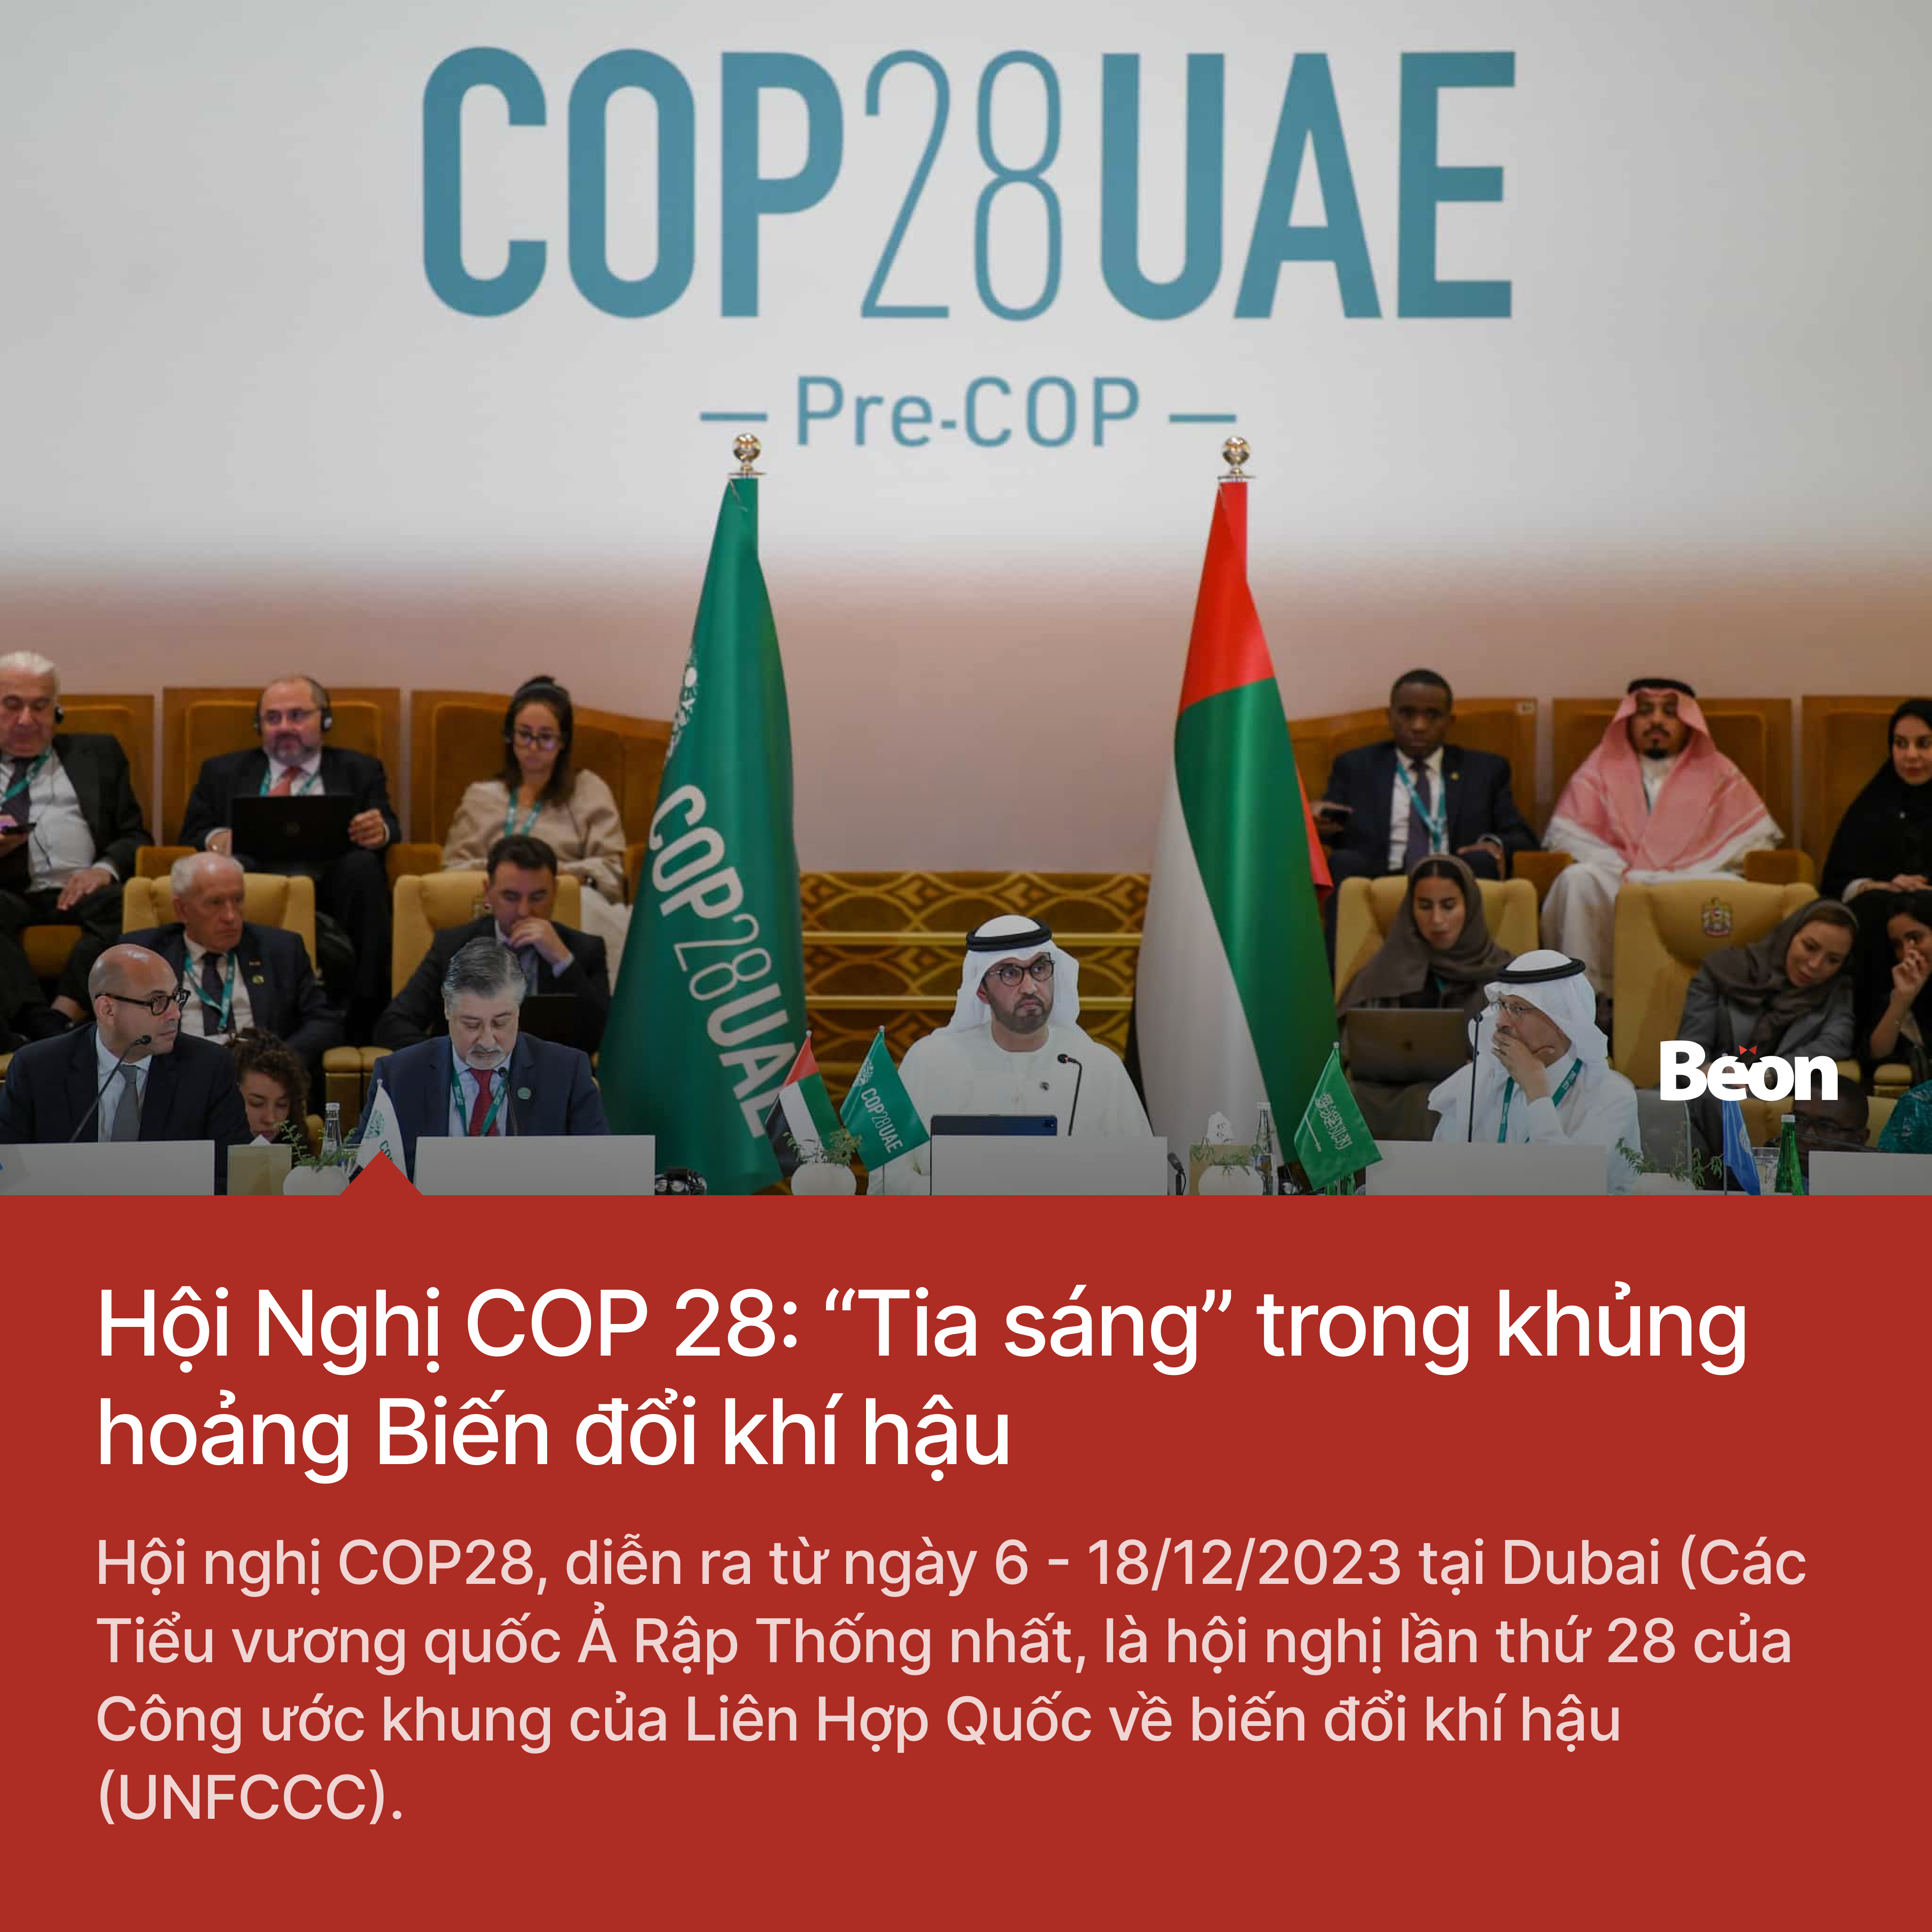 Hội Nghị COP 28: “Tia sáng” trong khủng hoảng Biến đổi khí hậu